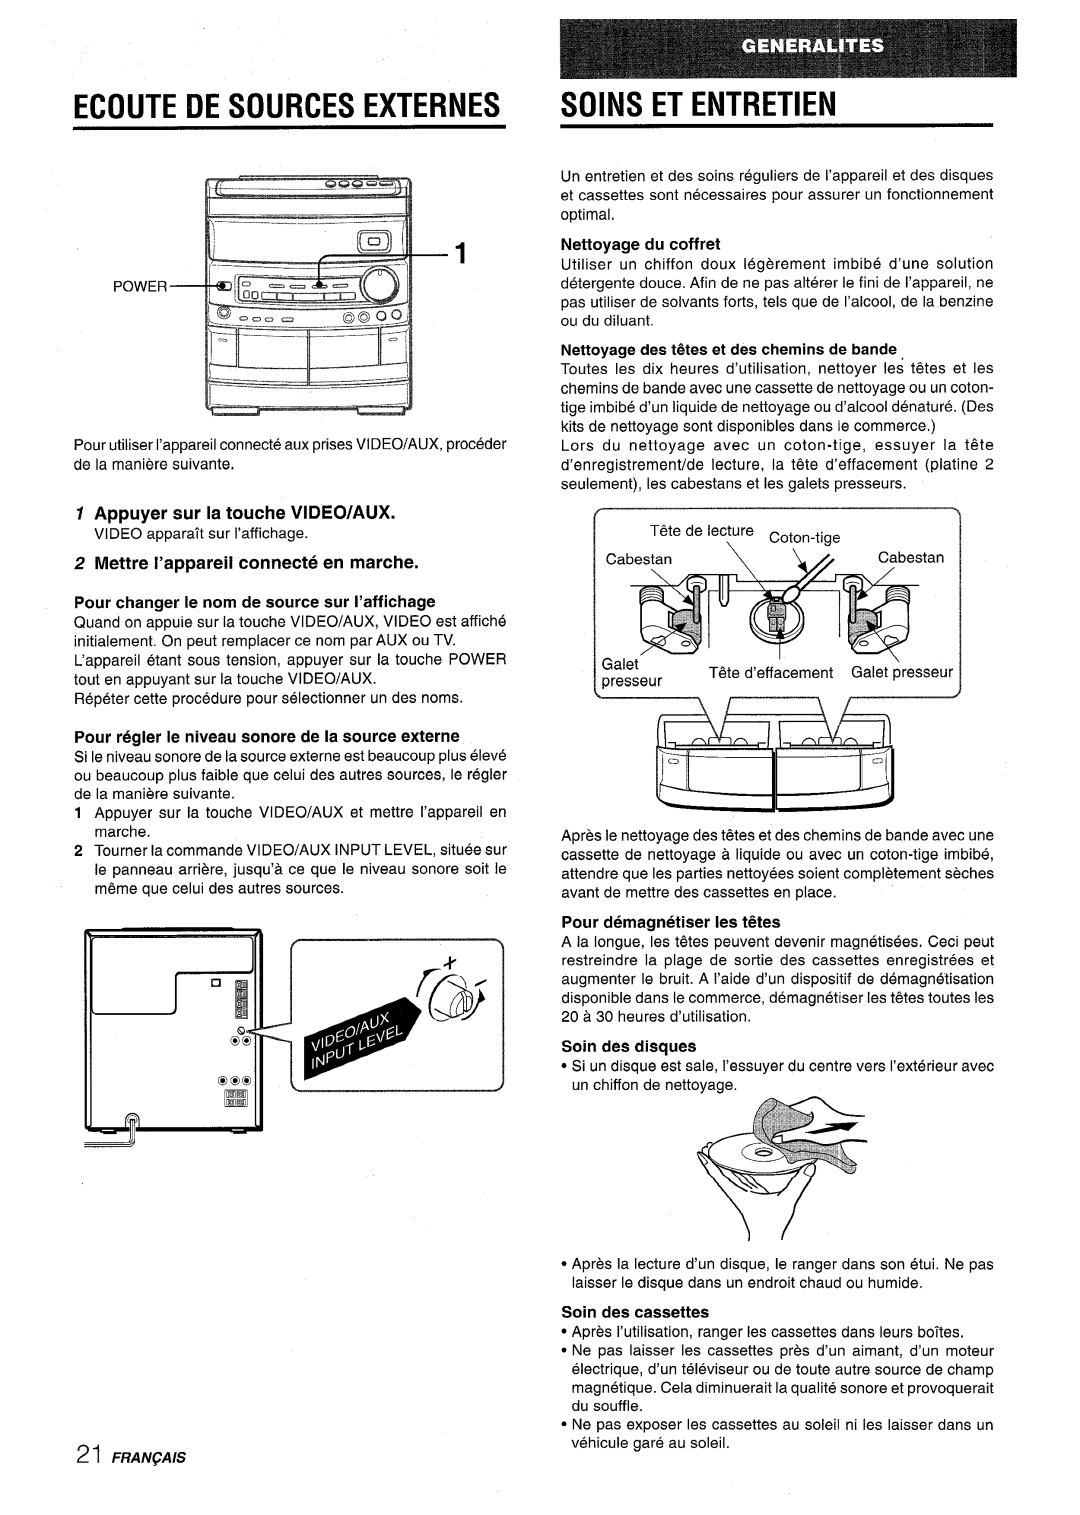 Aiwa CX-NV8000 manual Ecoute De Sources Externes Soins Et Entretien, Appuyer sur la touche VIDEO/AUX, Soin des cassettes 